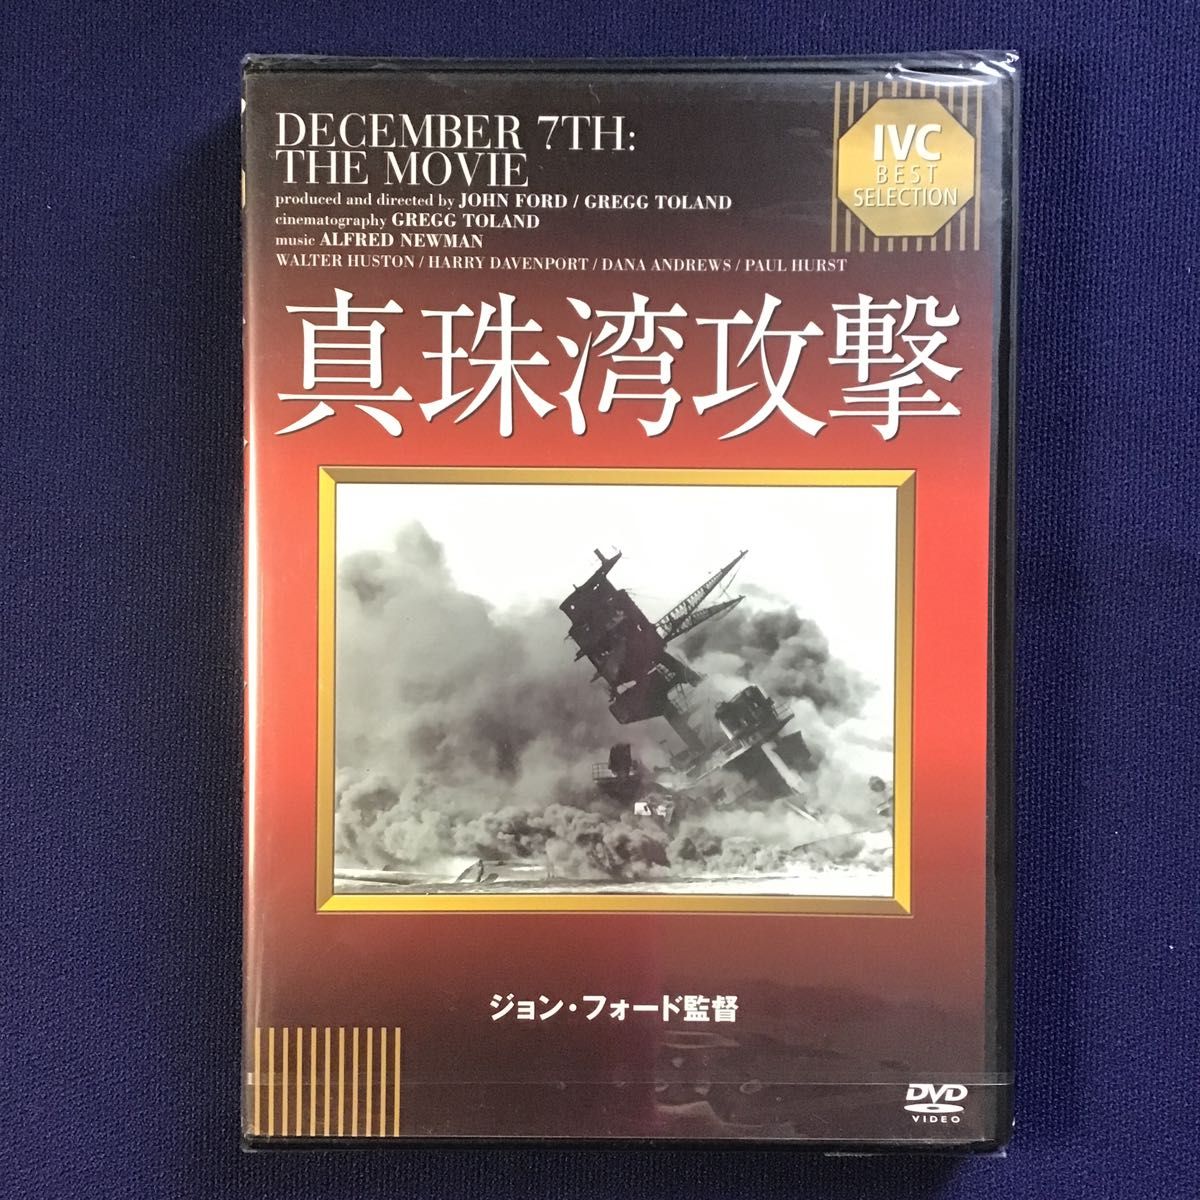 DVD 真珠湾攻撃 IVCベストセレクション IVCA-18083 戦争シネマ　ドキュメンタリー　第二次世界大戦